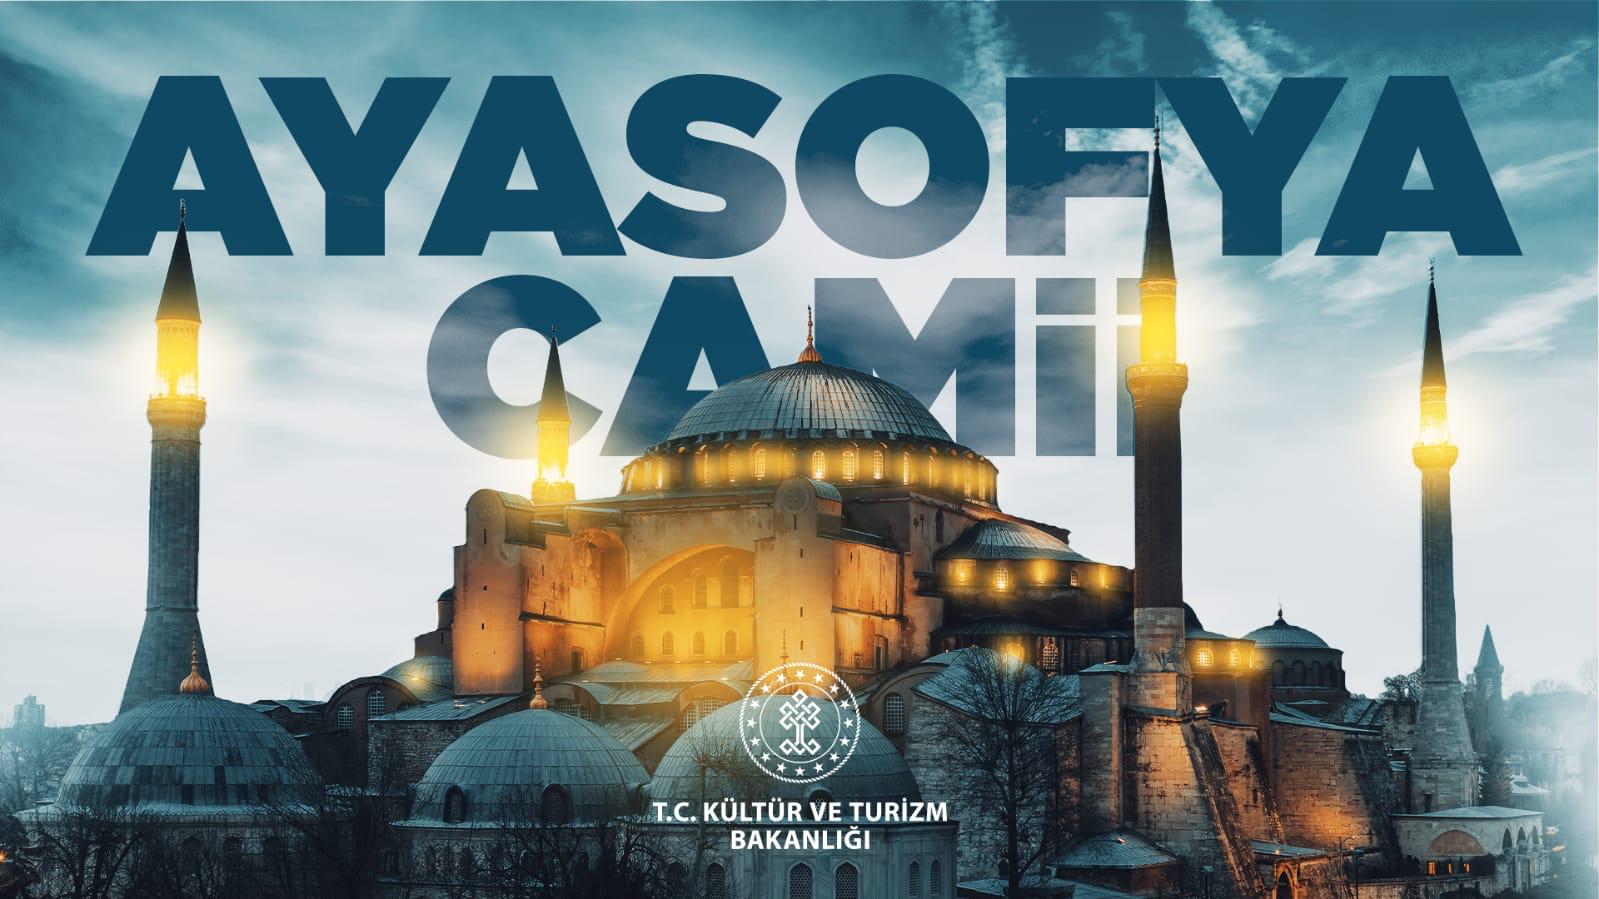 Αίσχος: Η Αγία Σοφιά παρουσιάζεται ως τζαμί στην αφίσα του τουρκικού υπουργείου Τουρισμού (φώτο)